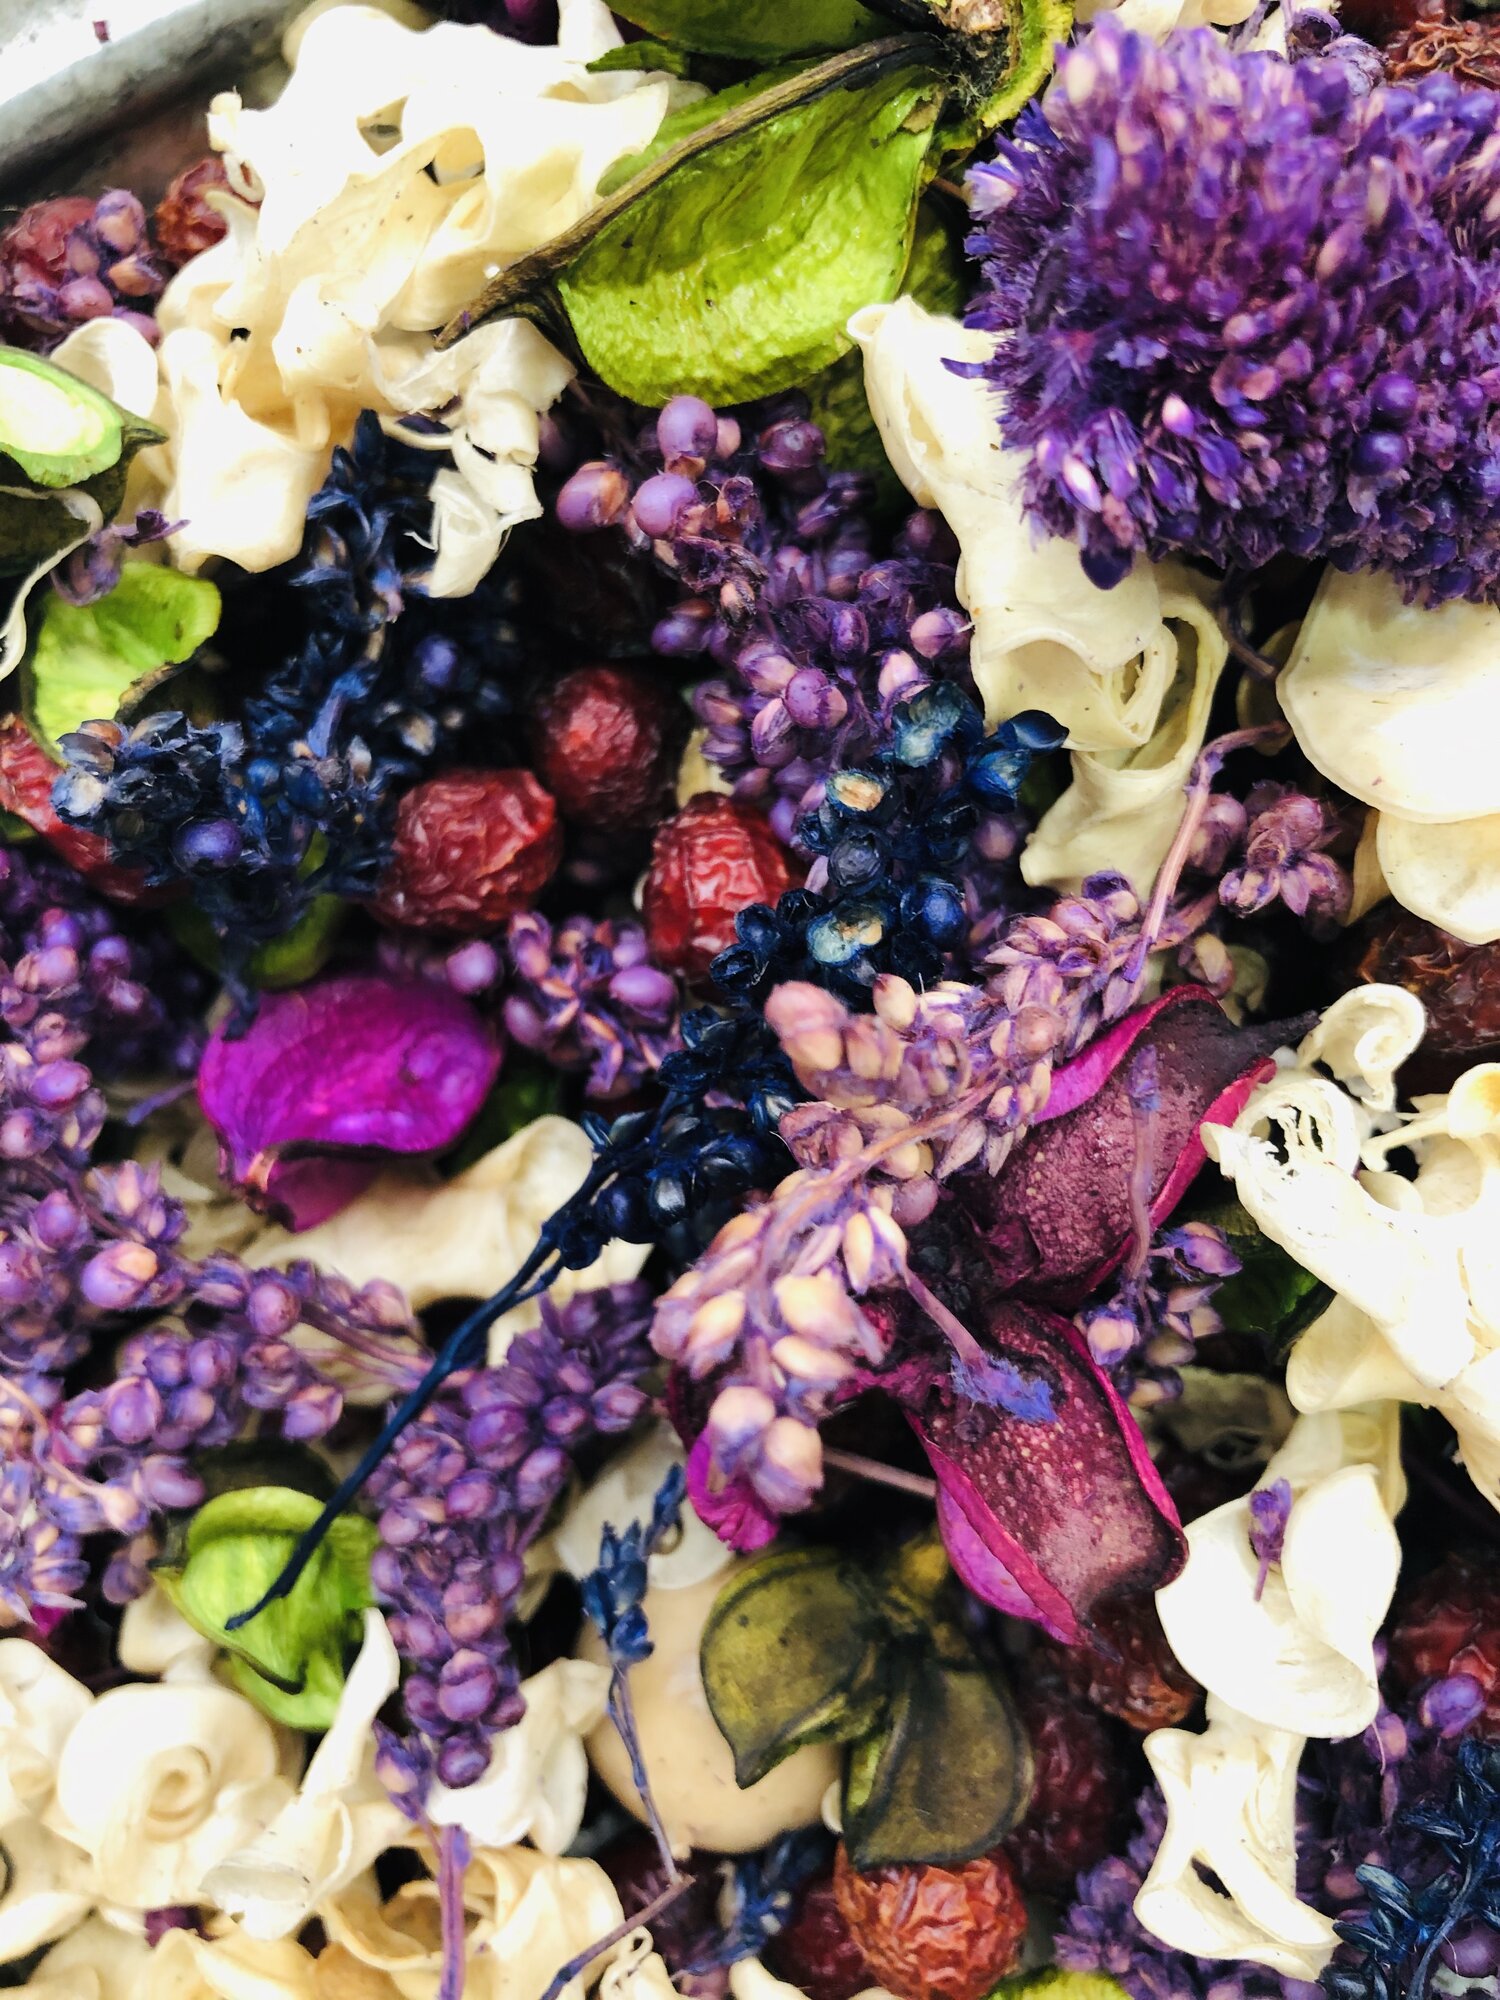 Lilac - Oil Dropper — Scentual Nature